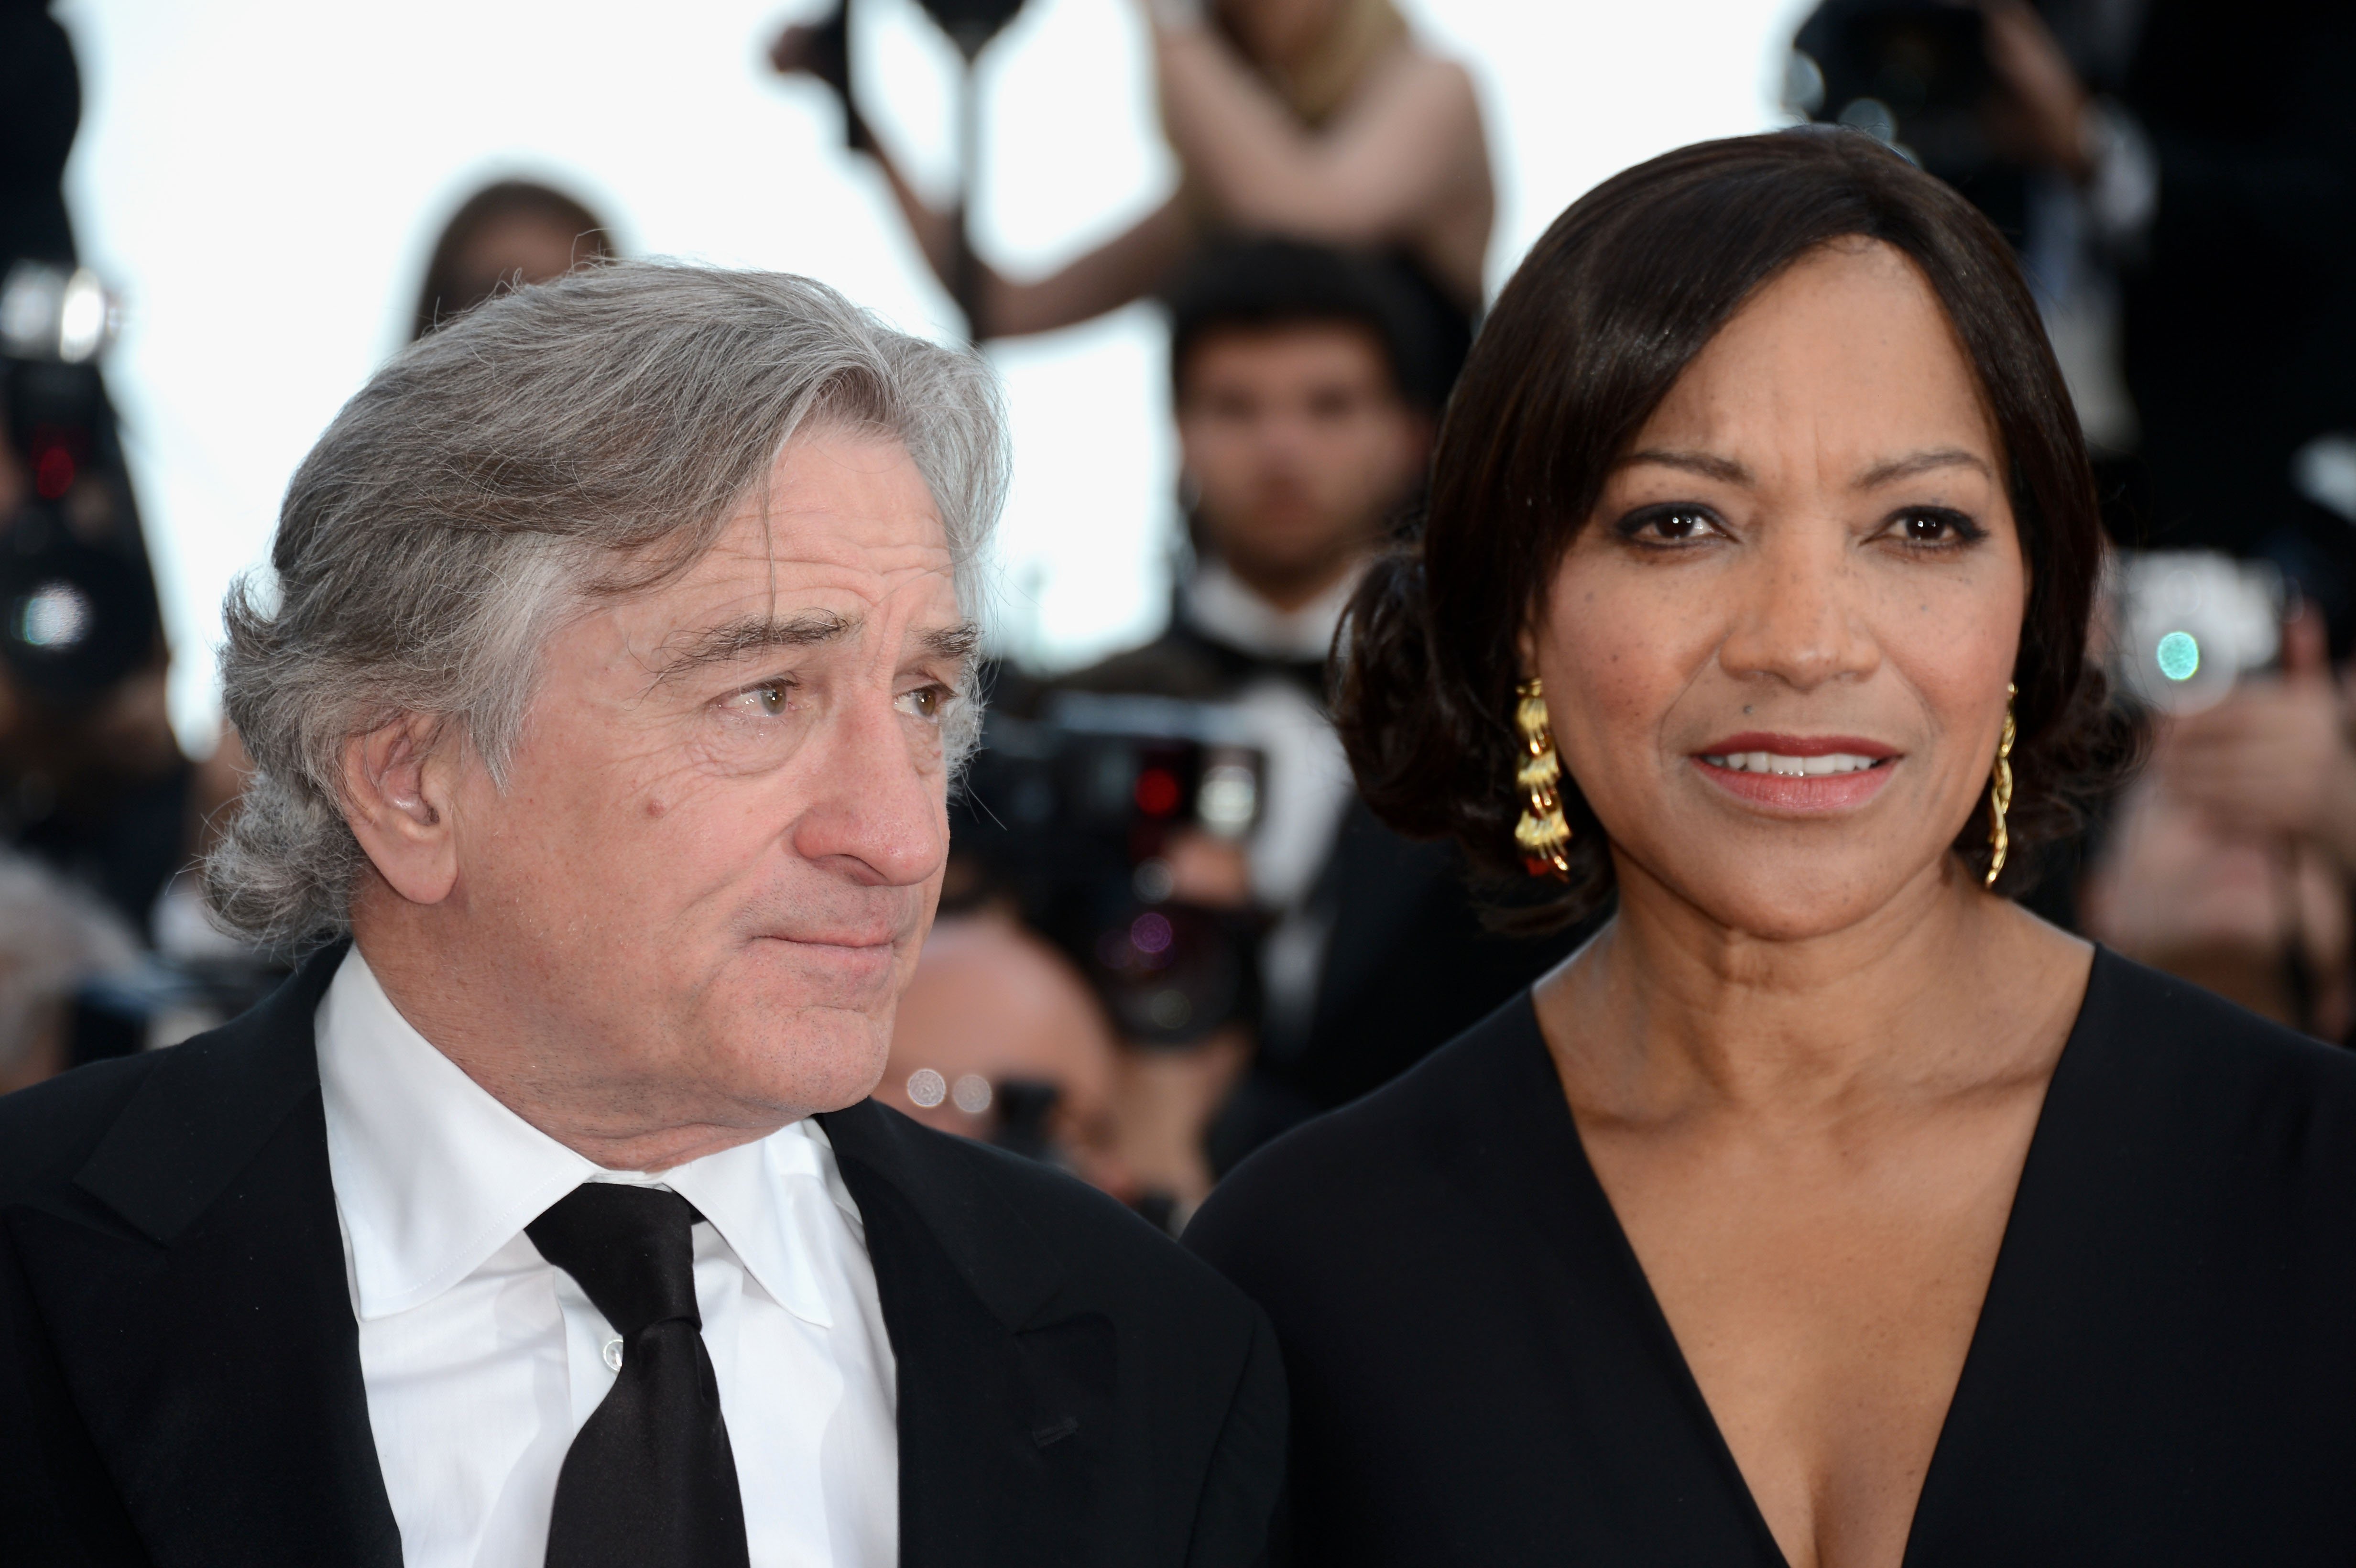 Robert De Niro und seine Frau Grace Hightower nehmen am 18. Mai 2012 im Palais des Festivals in Cannes, Frankreich, an der Premiere von "Once Upon A Time" während der 65. jährlichen Filmfestspiele von Cannes teil | Quelle: Getty Images